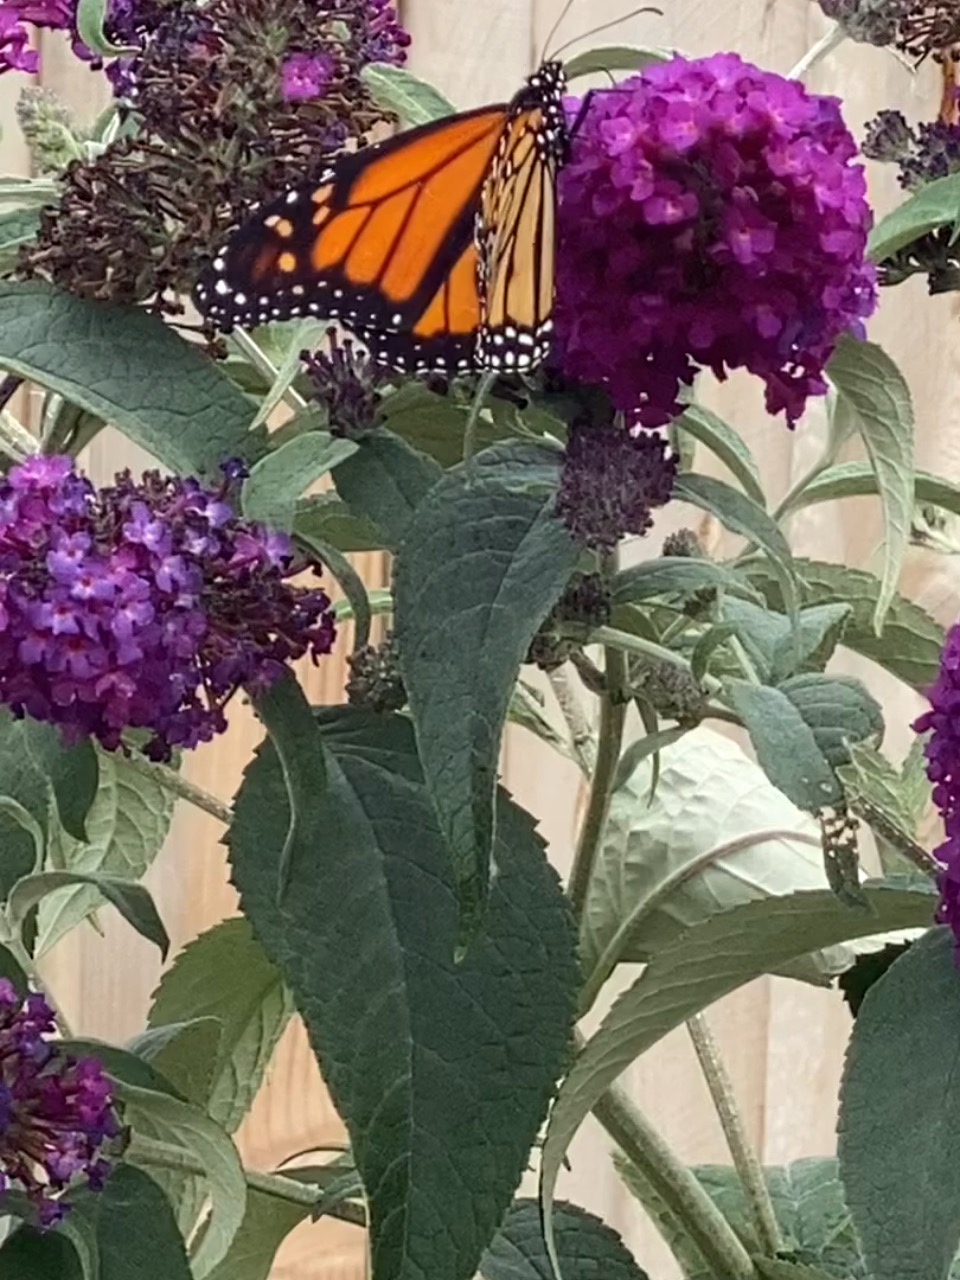 A monarch butterfly on a purple bloom